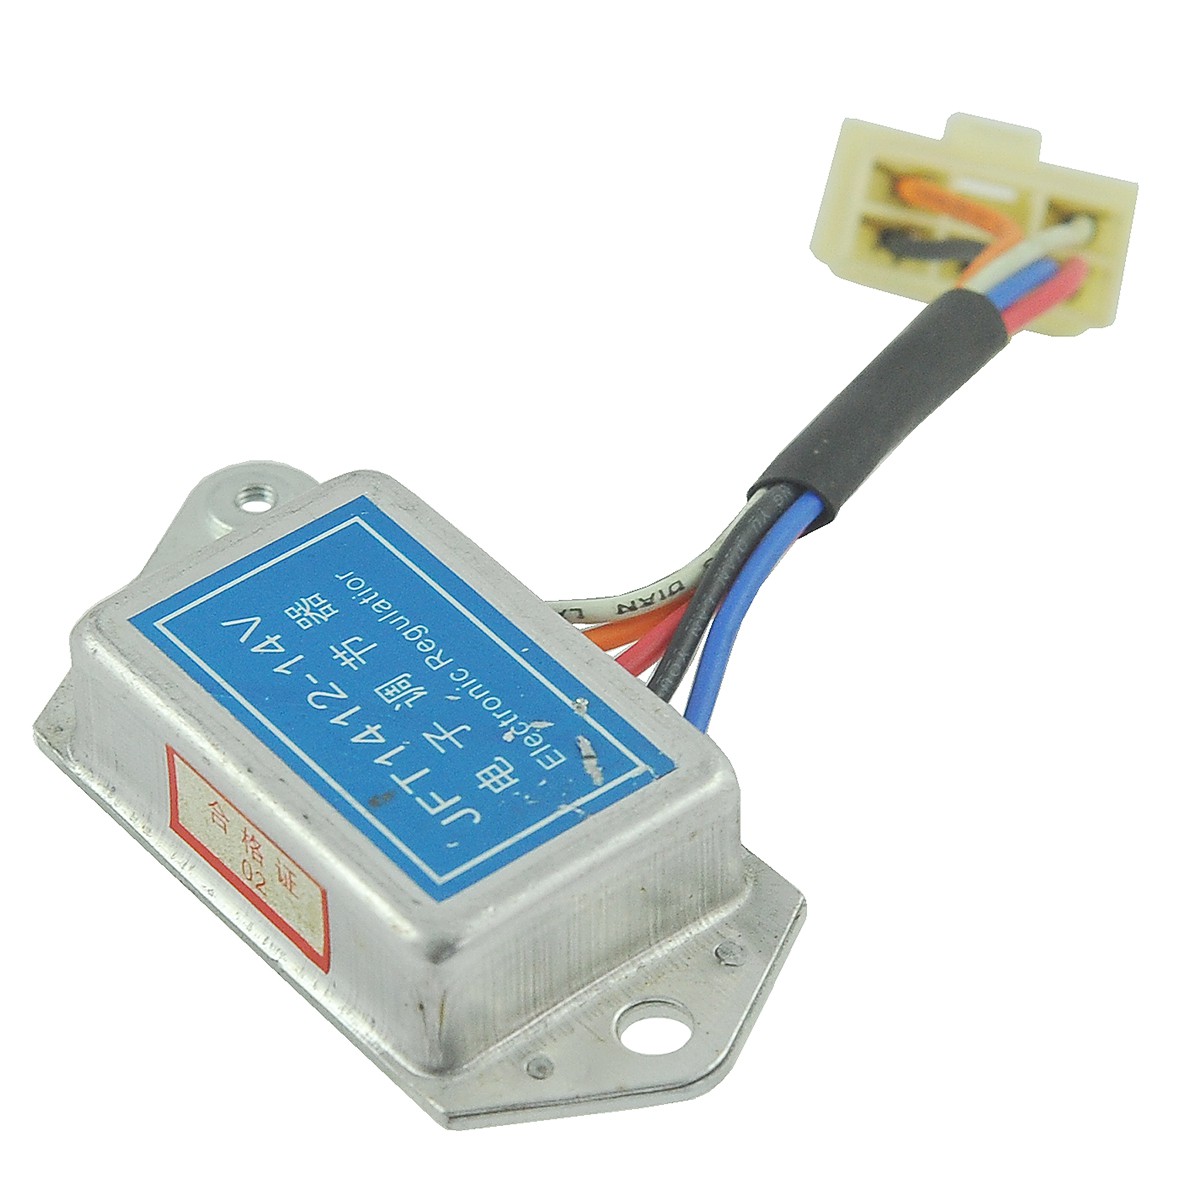 Voltage regulator 12V / Jinma 204 / Jinma JM204 / JFT1412-14V